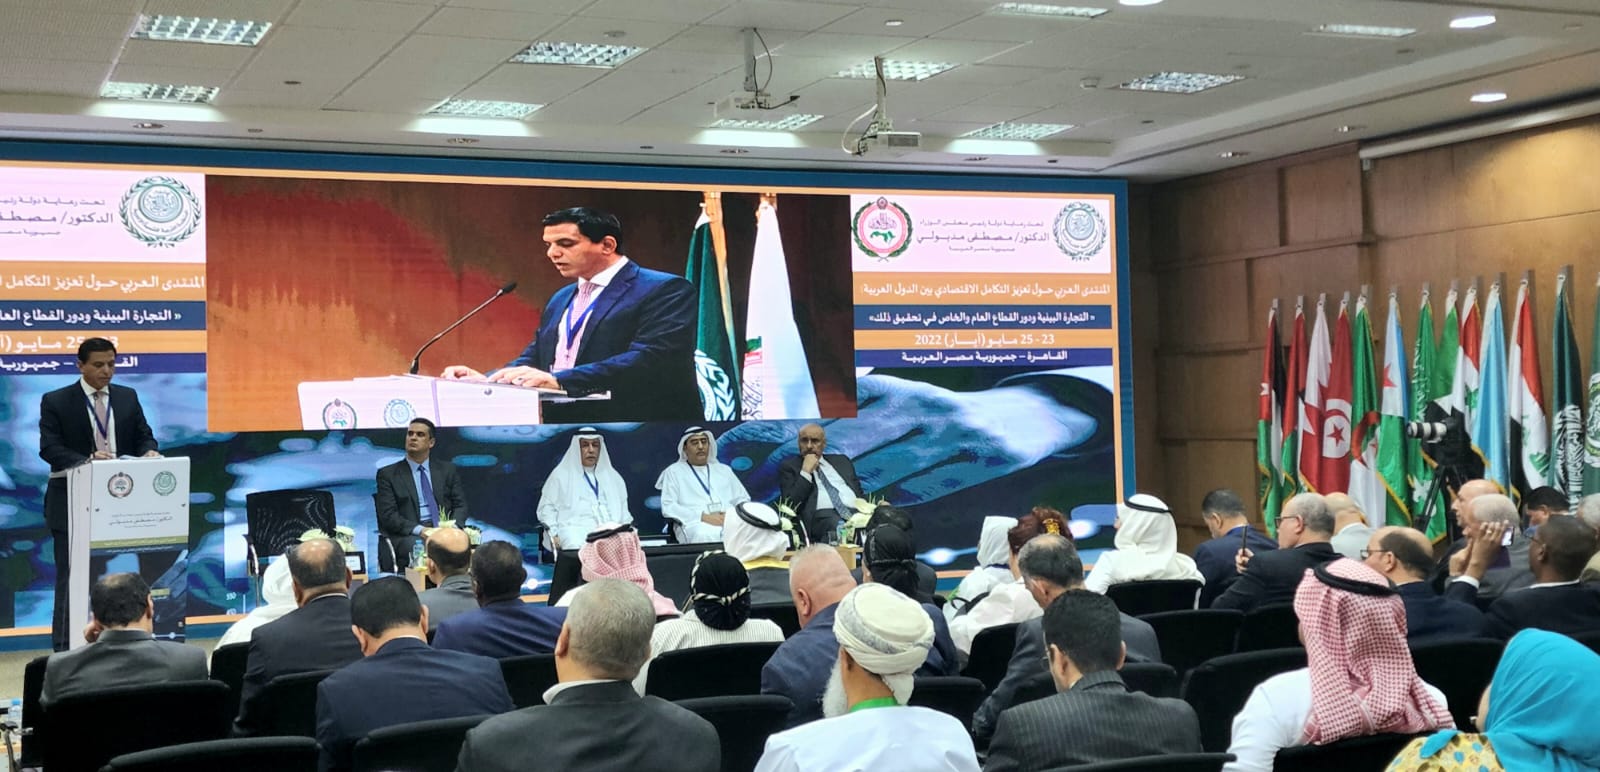 المنتدى الاقتصادي العربي يضع خارطة طريق عربية لتحقيق التكامل الاقتصادي العربي المأمول